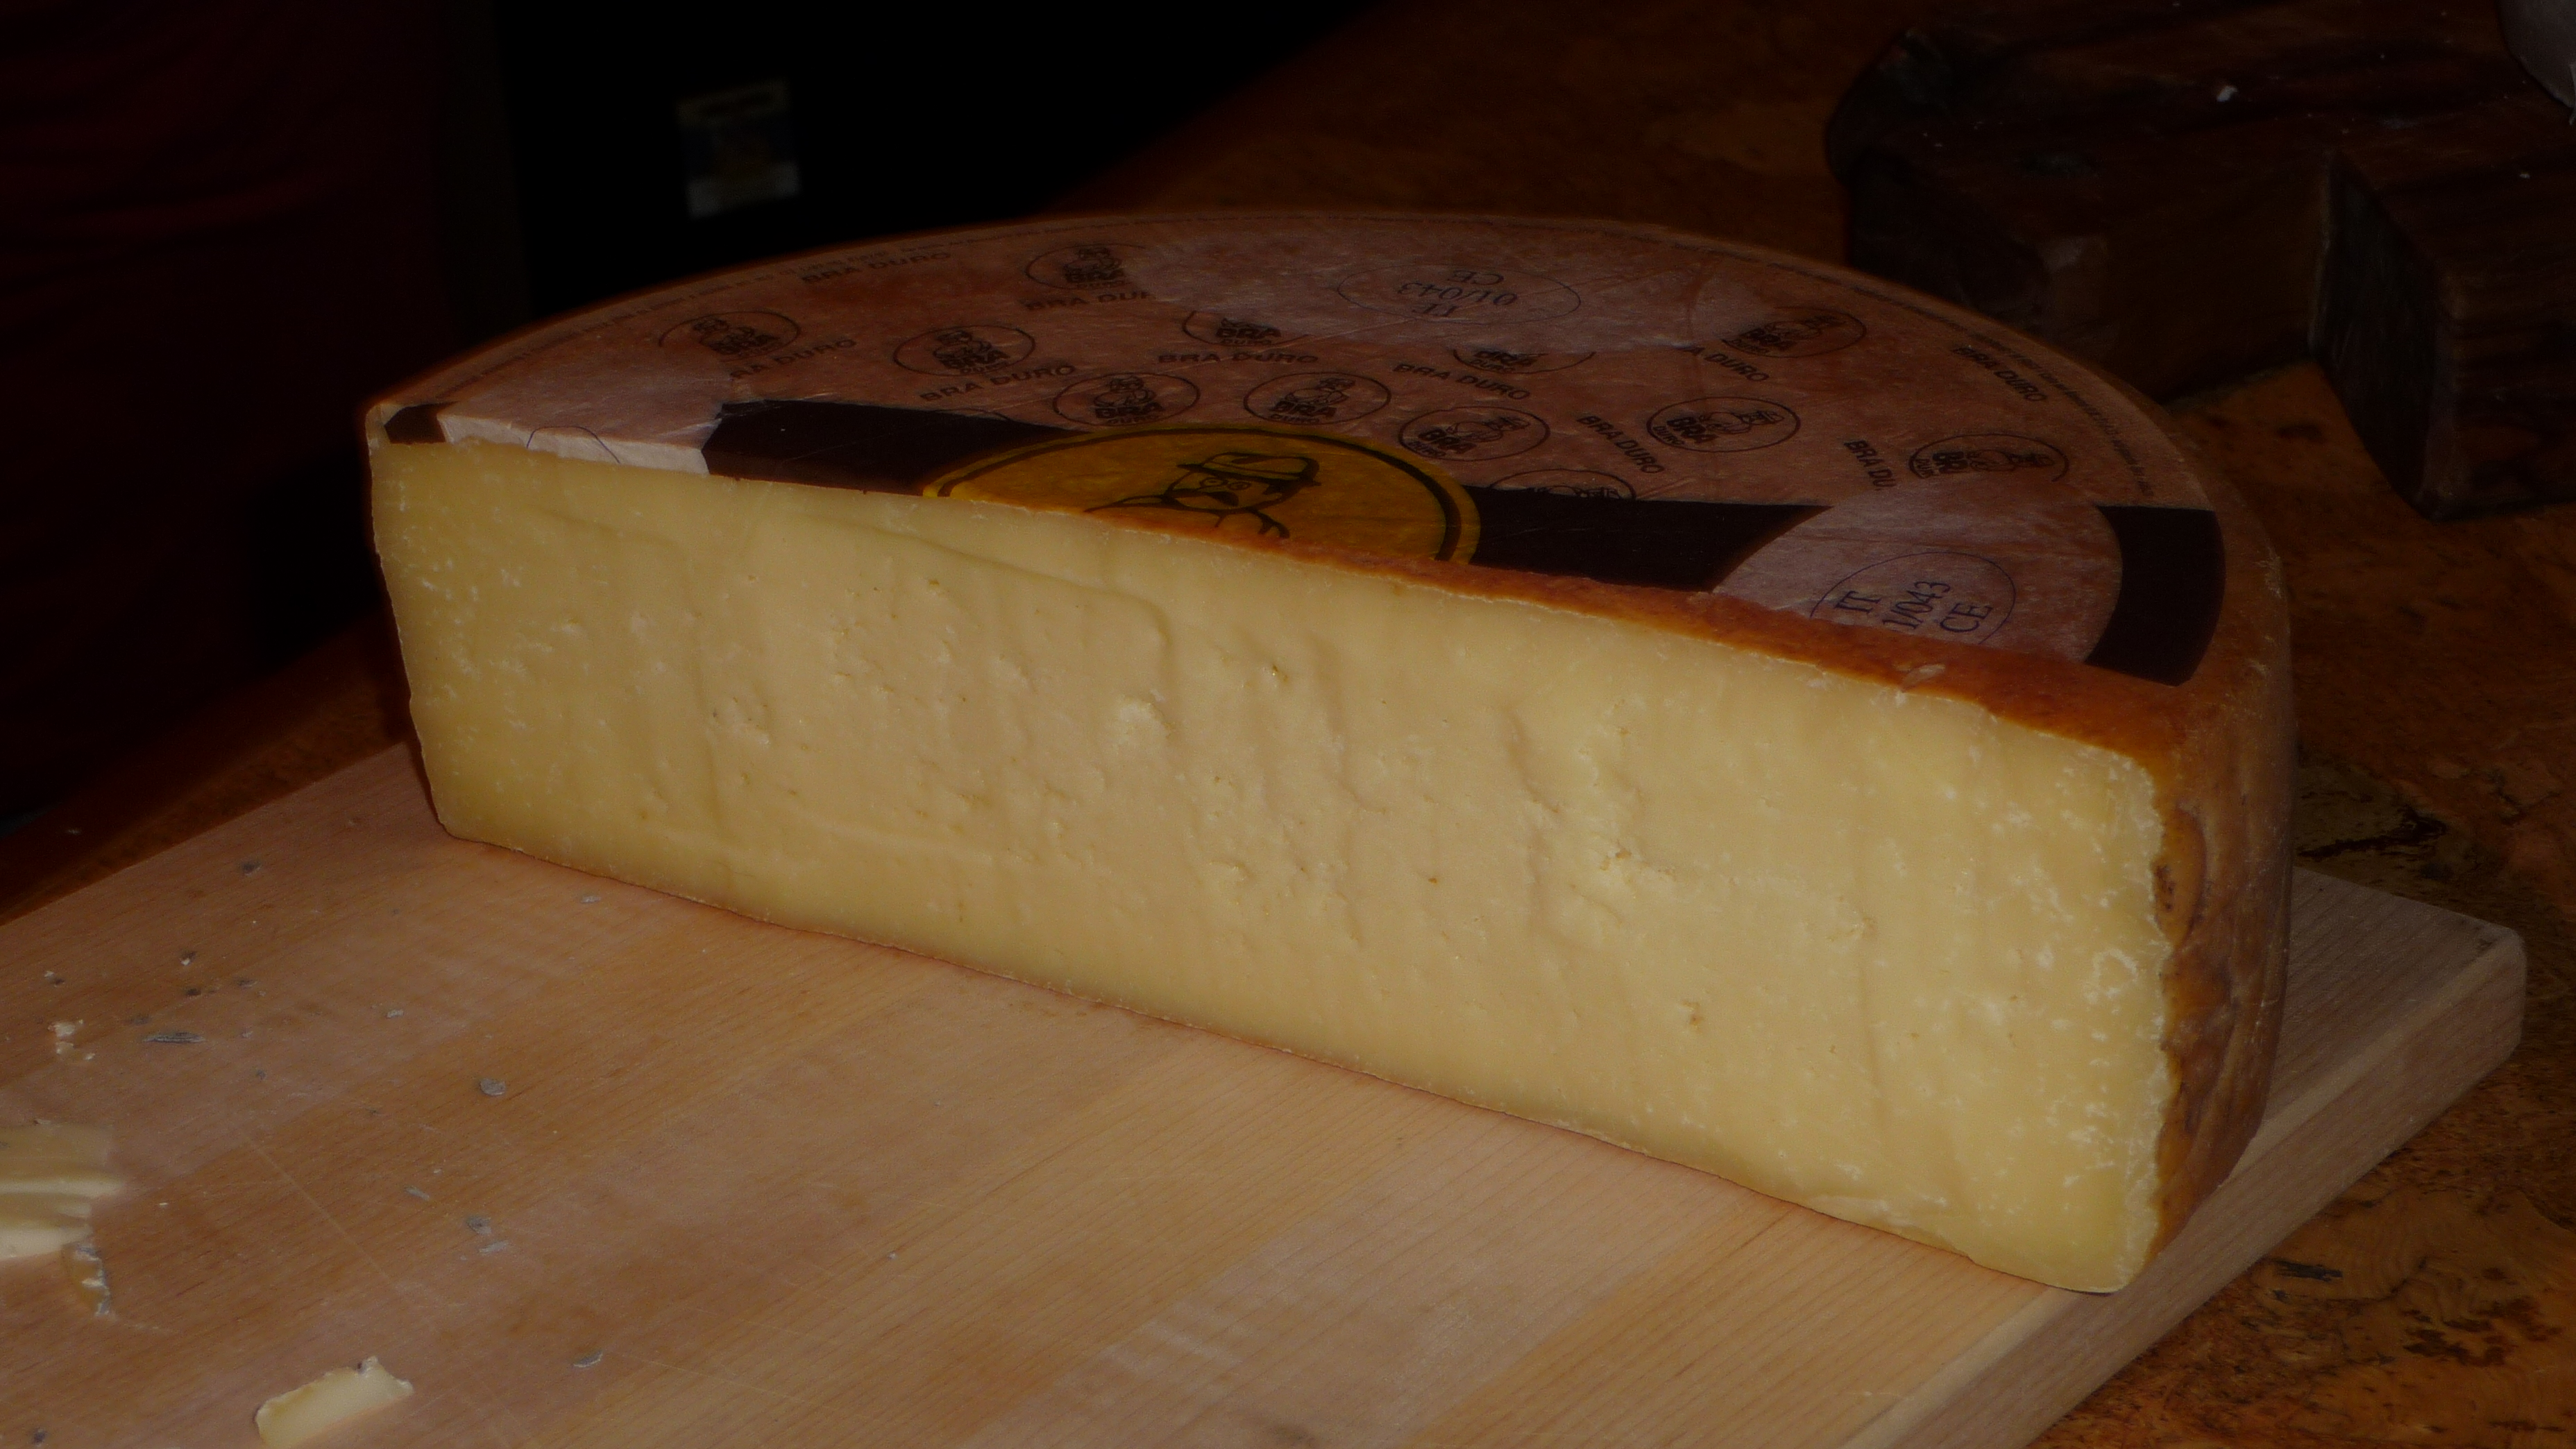 Bra cheese - Wikipedia